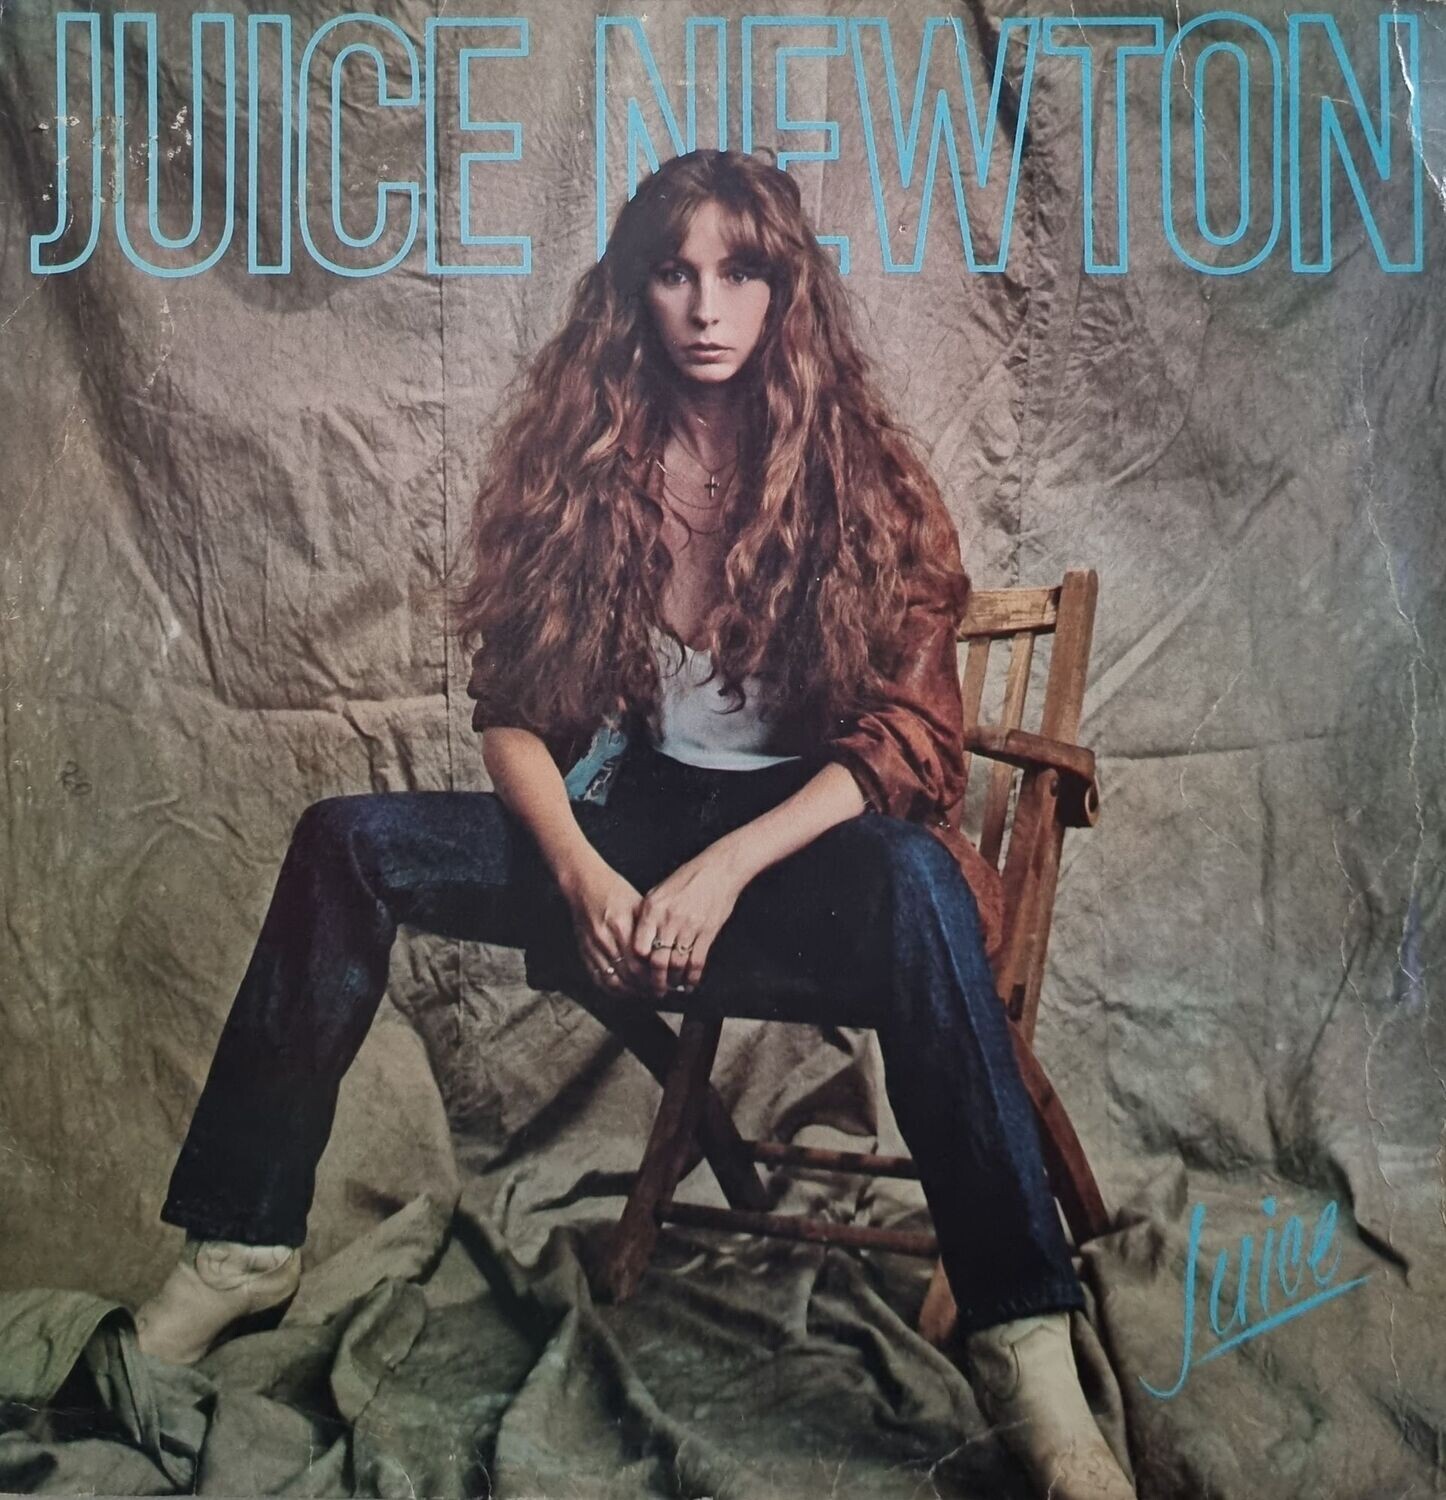 Juice Newton – Juice (1981)